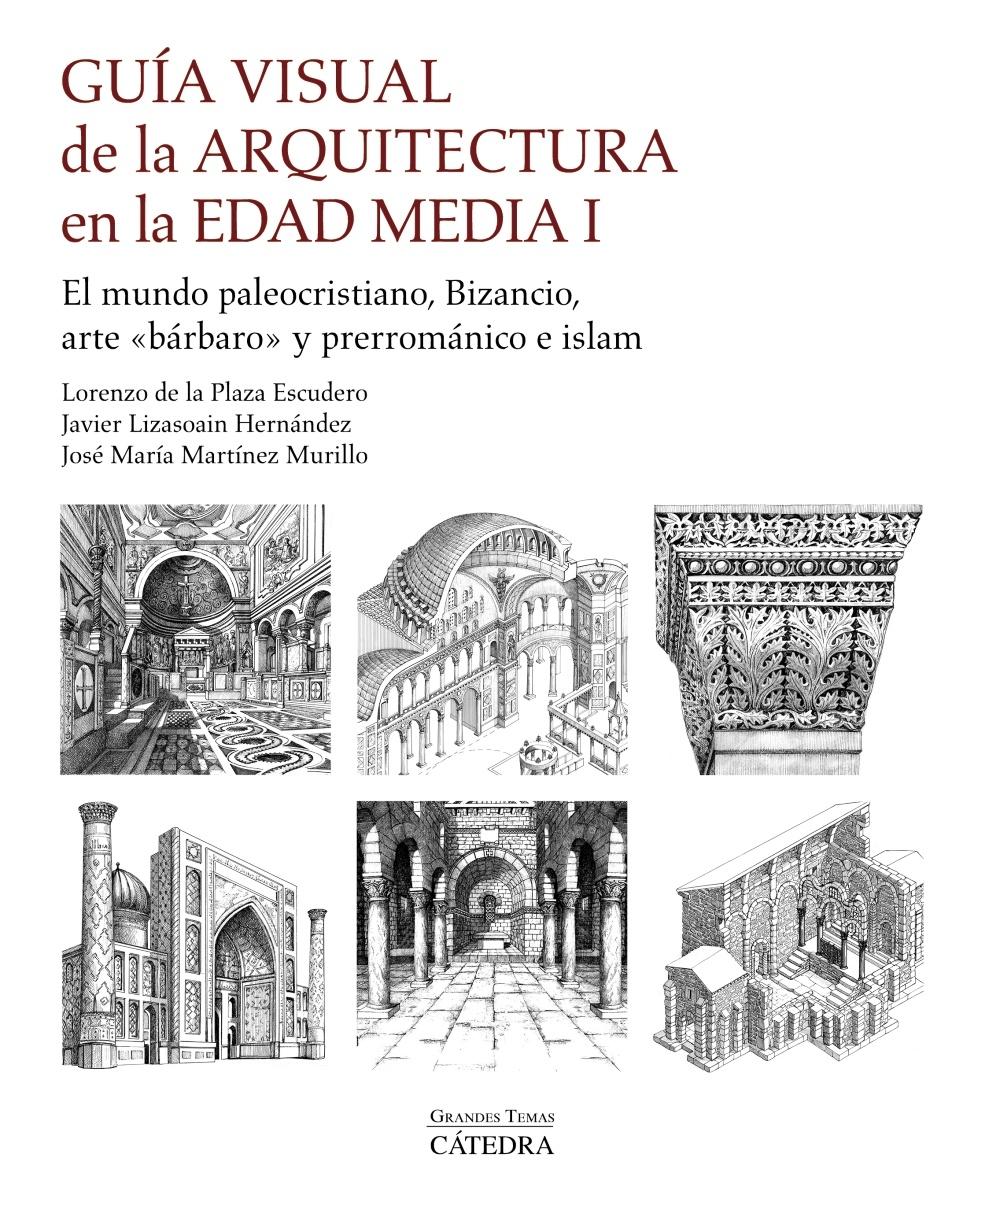 Guía Visual de la Arquitectura en la Edad Media I "El Mundo Paleocristiano, Bizancio, Arte "Bárbaro" y Prerrománico e Islam". 